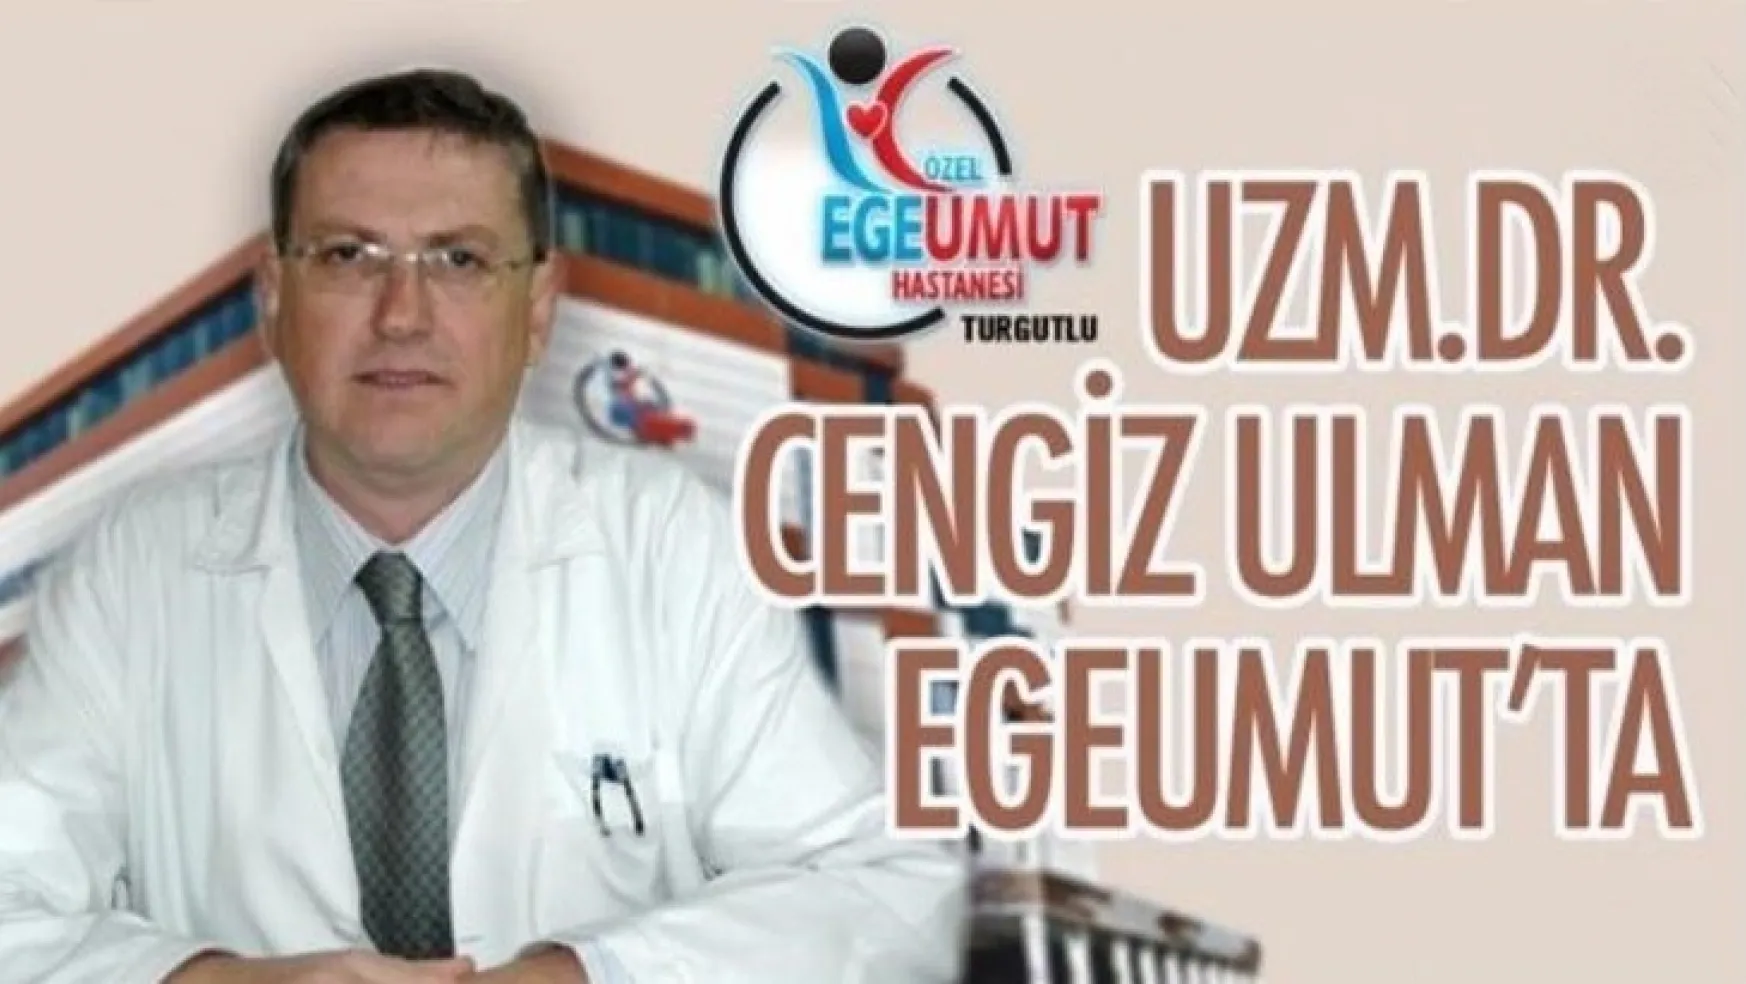 Uzm. Dr. Cengiz Ulman Egeumut'ta yeni görev yerine başlıyor